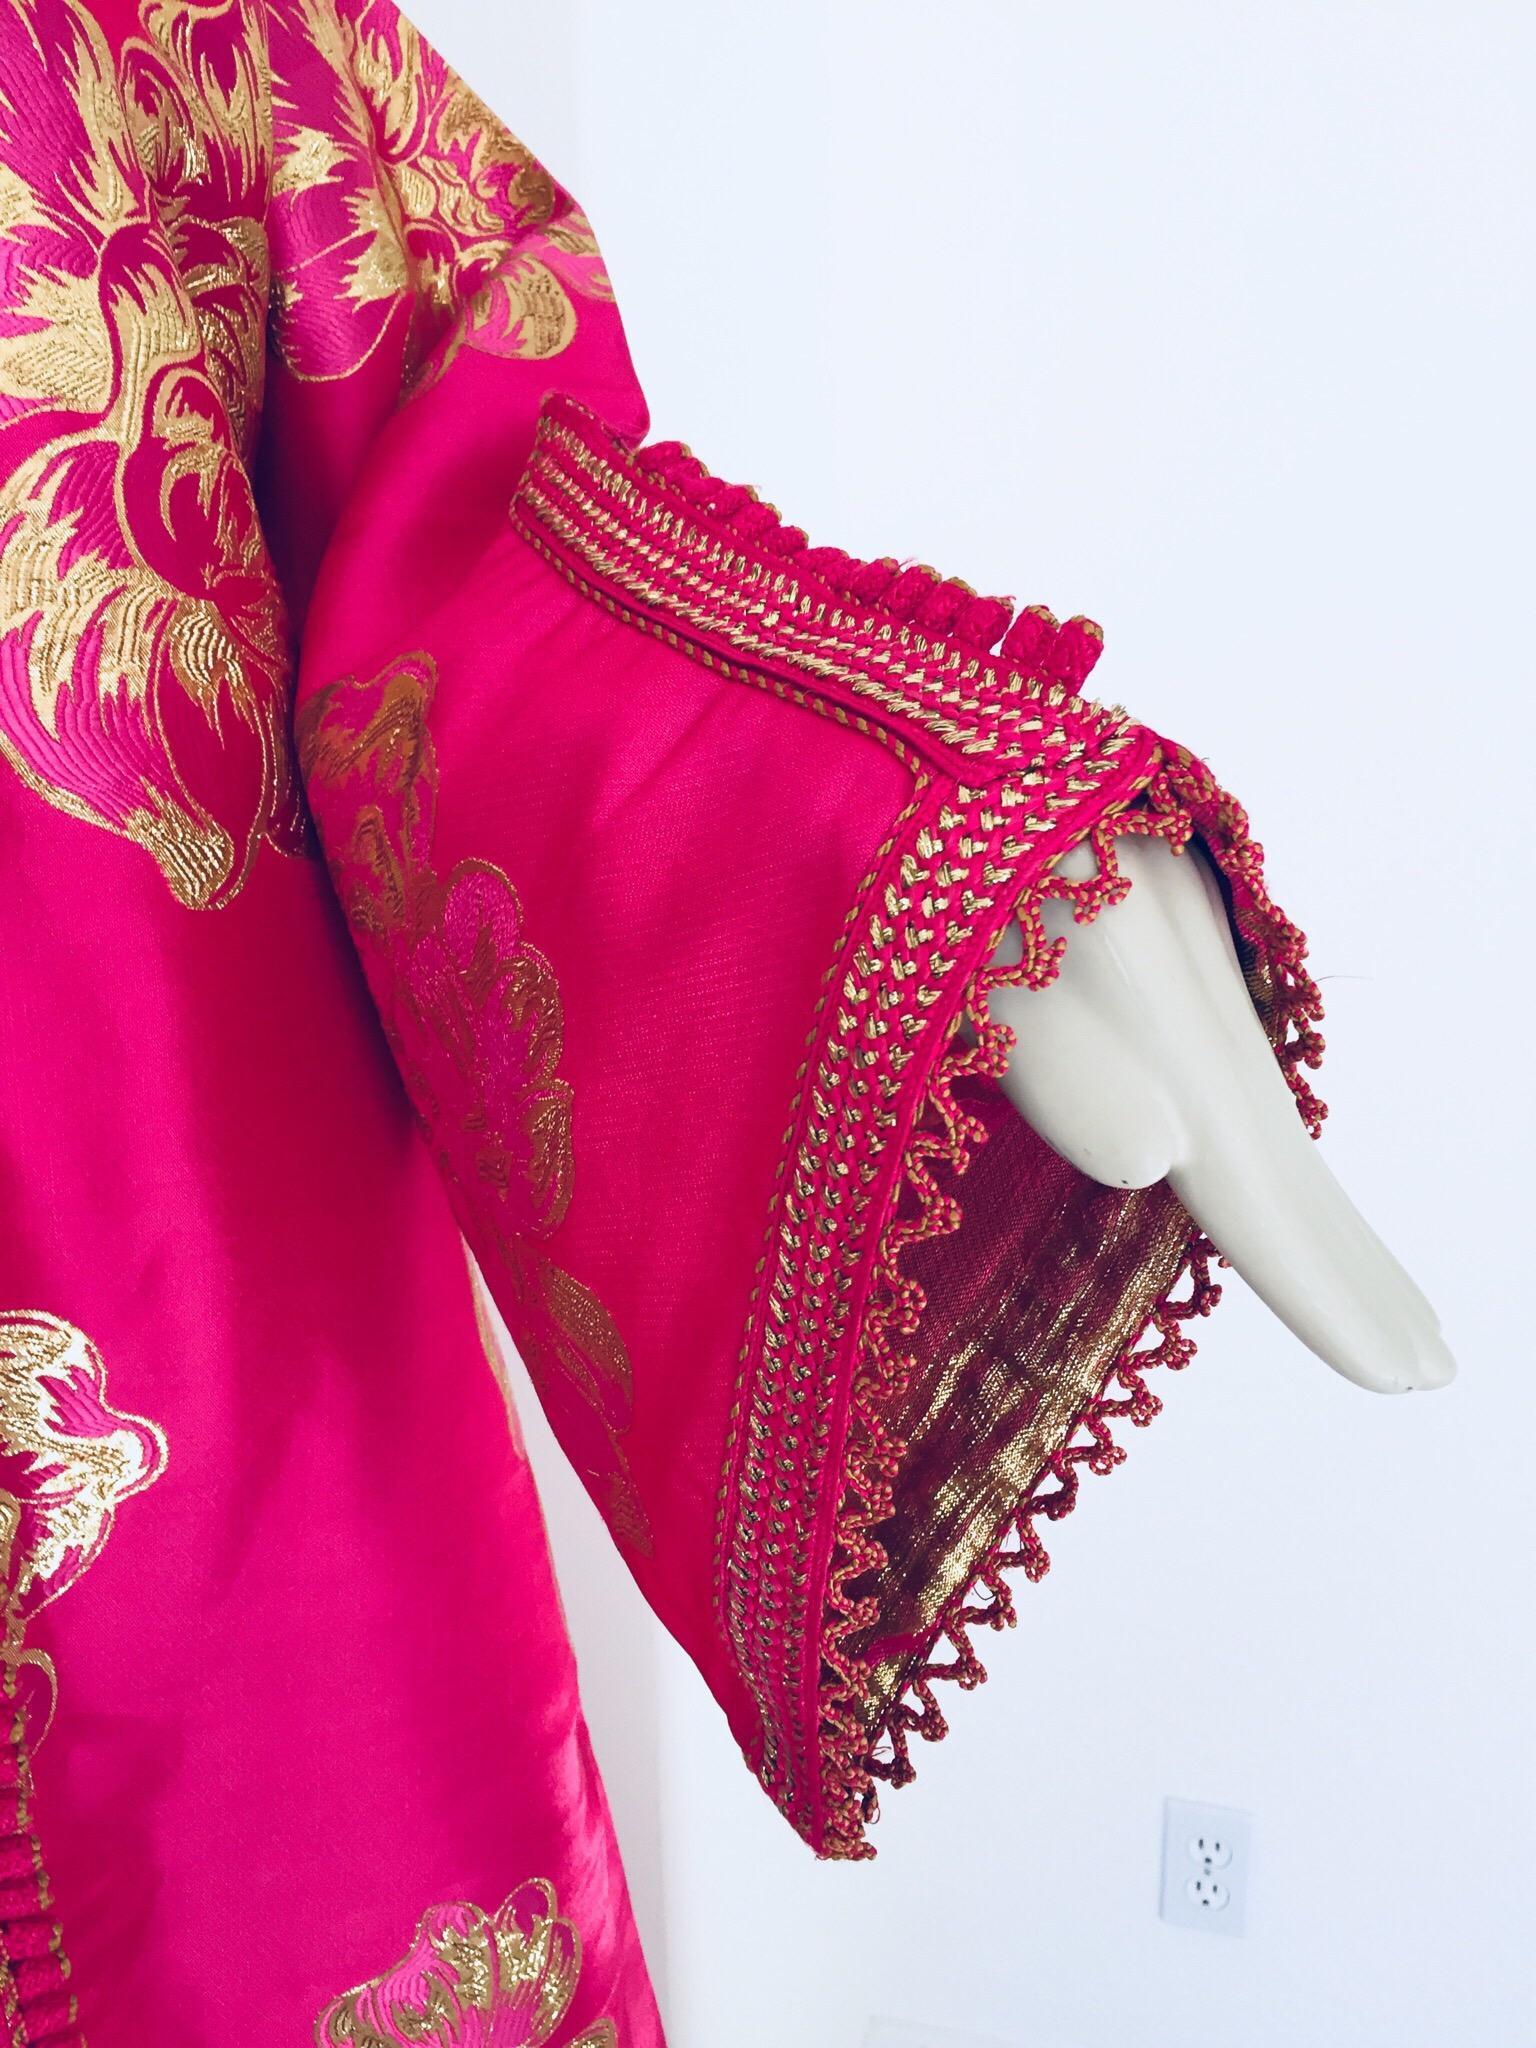 Elegant kaftan marocain vintage en brocart, brodé de rose et d'or.
Cette robe longue chic en brocart est brodée et rehaussée de bordures de fils tissés à la main. 
Il s'agit d'une chaussure à enfiler, le bouton ne s'ouvre pas.
Robe de soirée